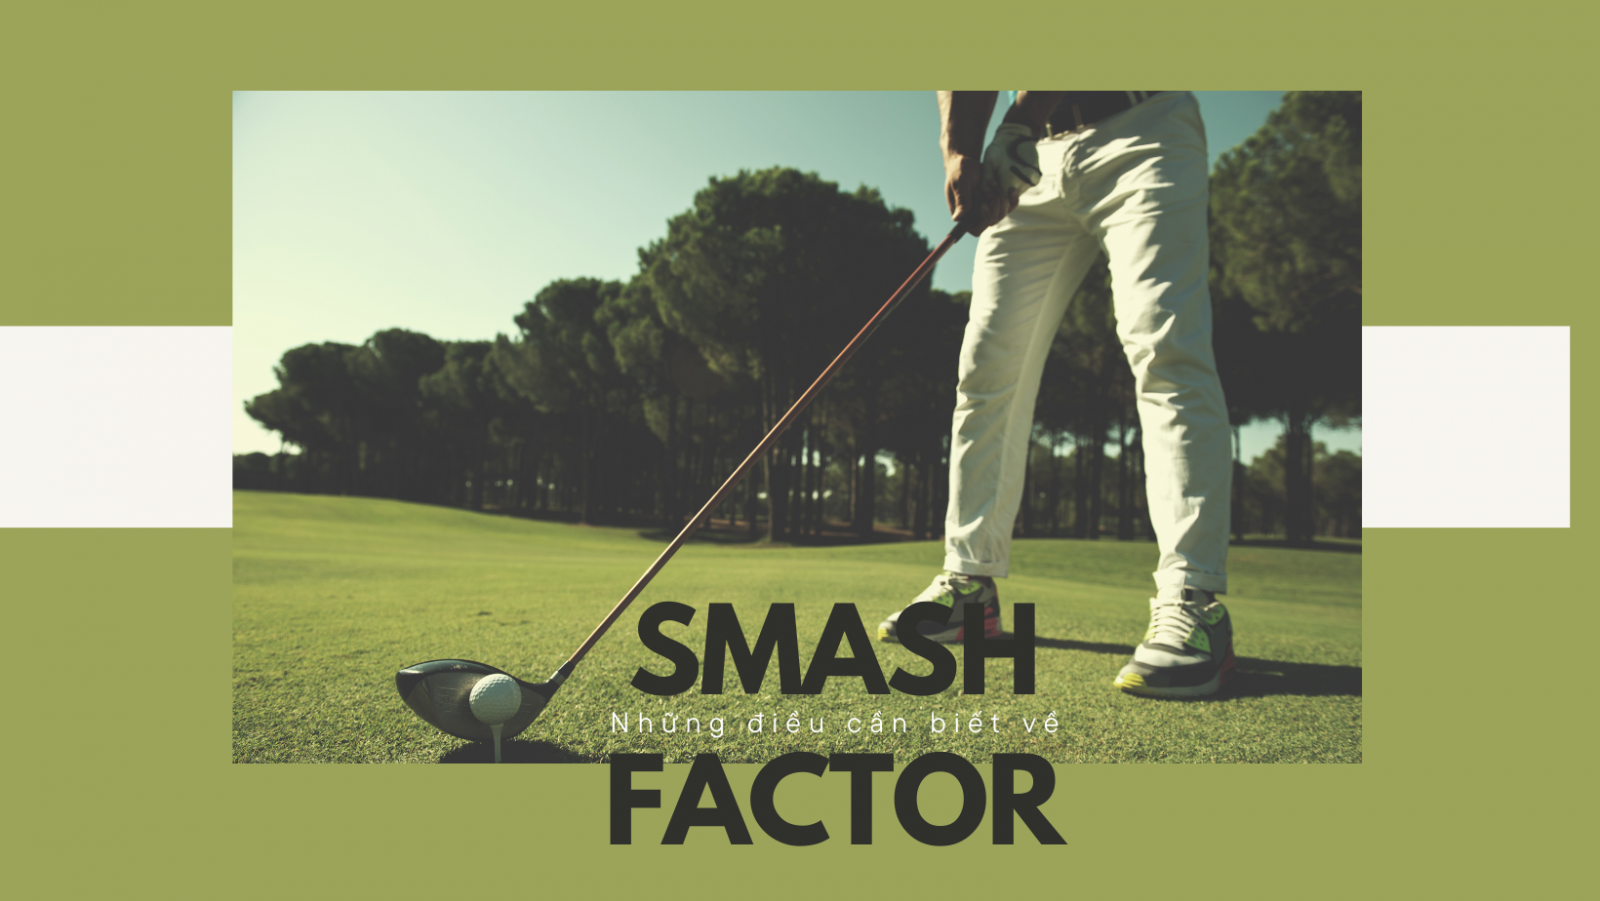 Tìm hiểu về Smash Factor trong golf - Cách nó ảnh hưởng đến cú đánh của bạn